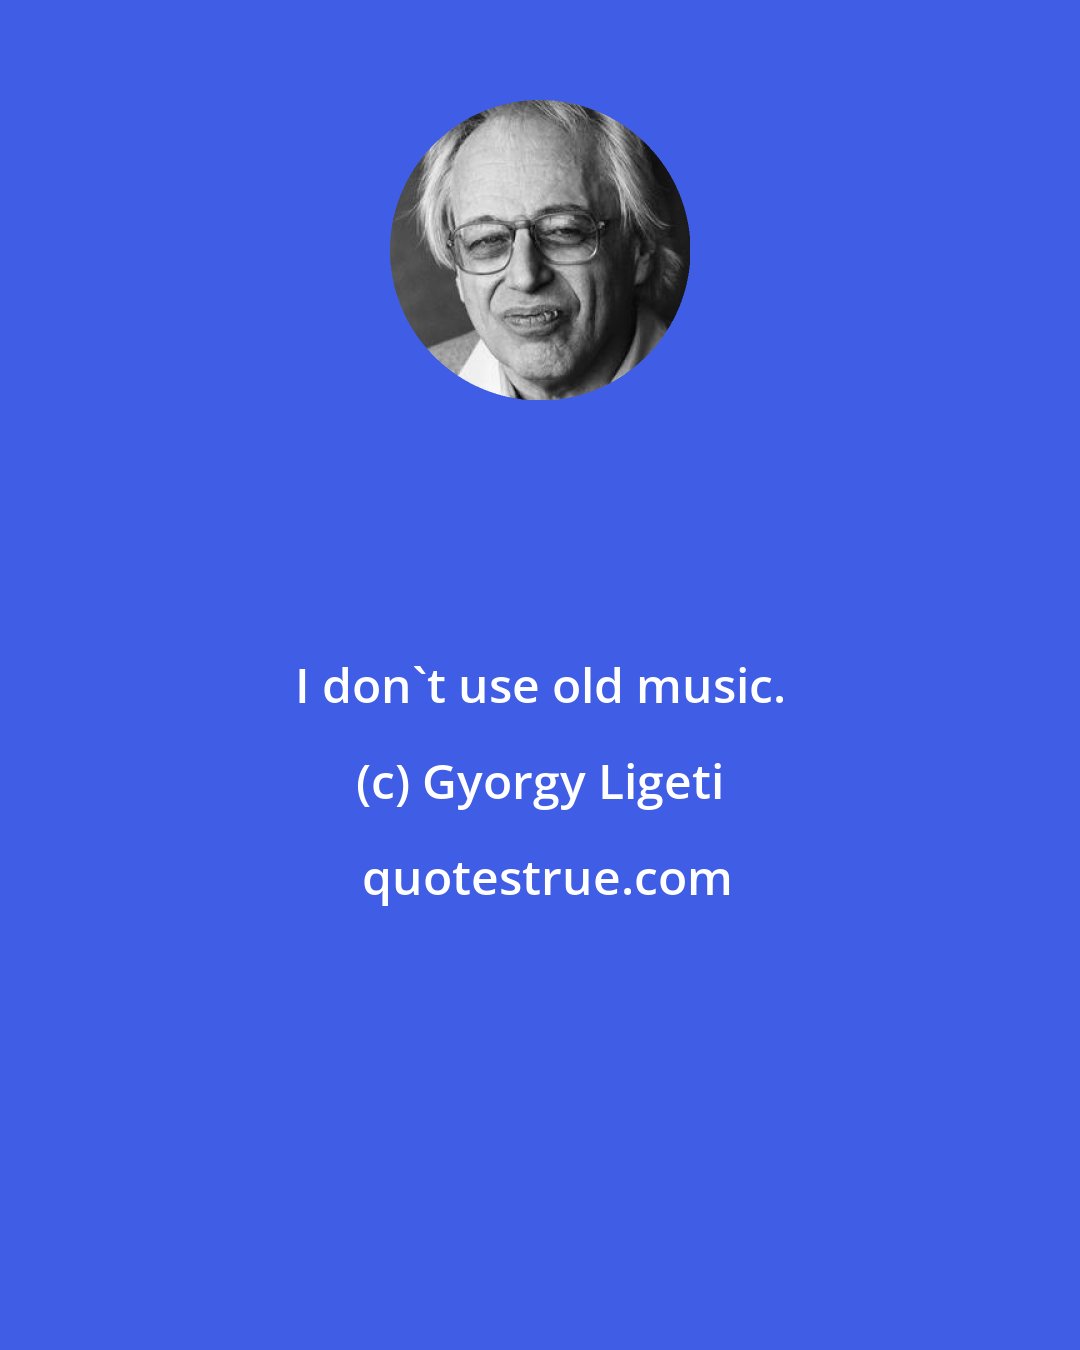 Gyorgy Ligeti: I don't use old music.